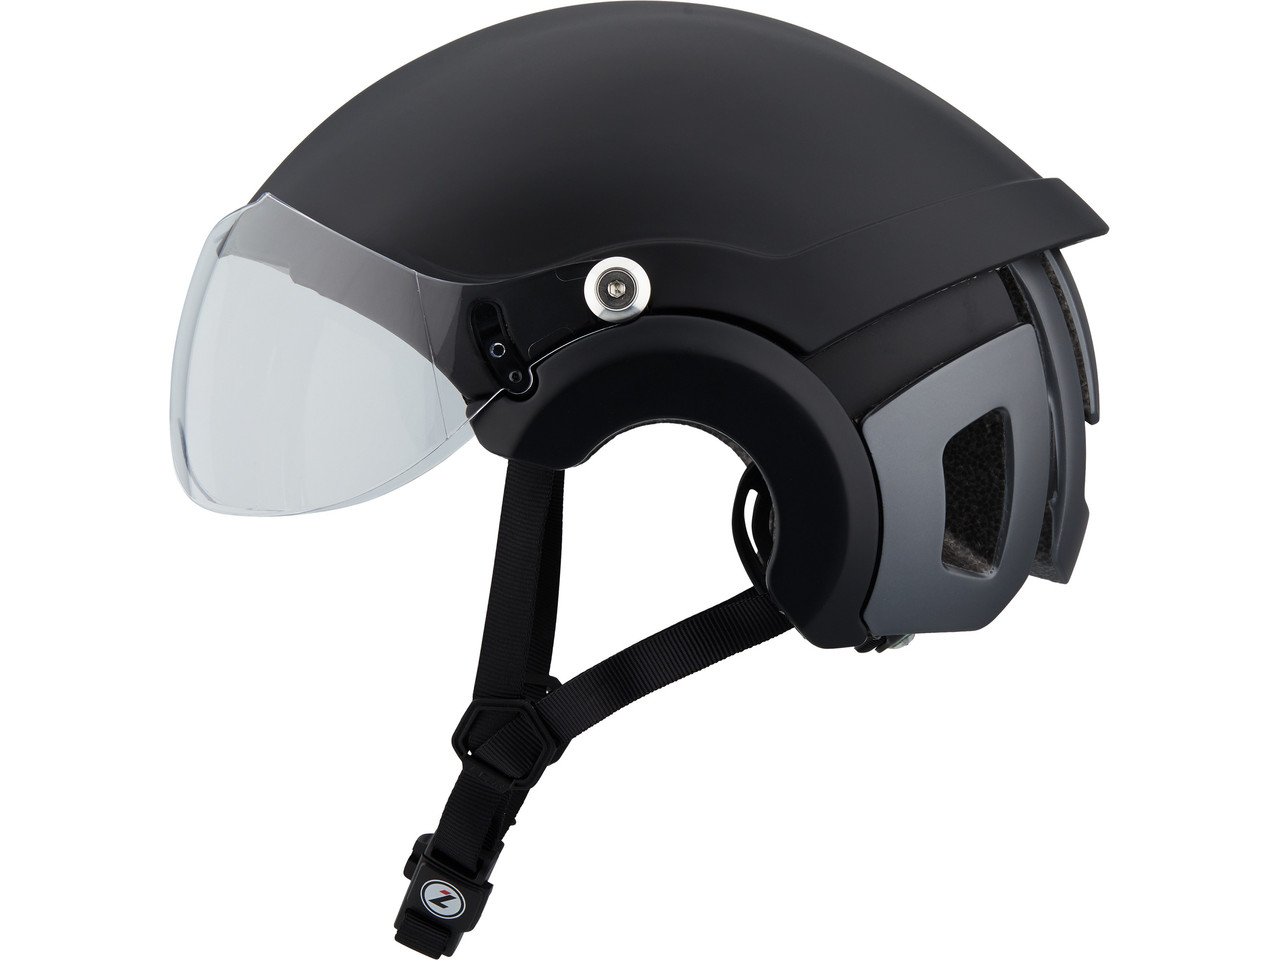 Dele oprejst myndighed Lazer Anverz NTA MIPS E-Bike Helmet - bike-components